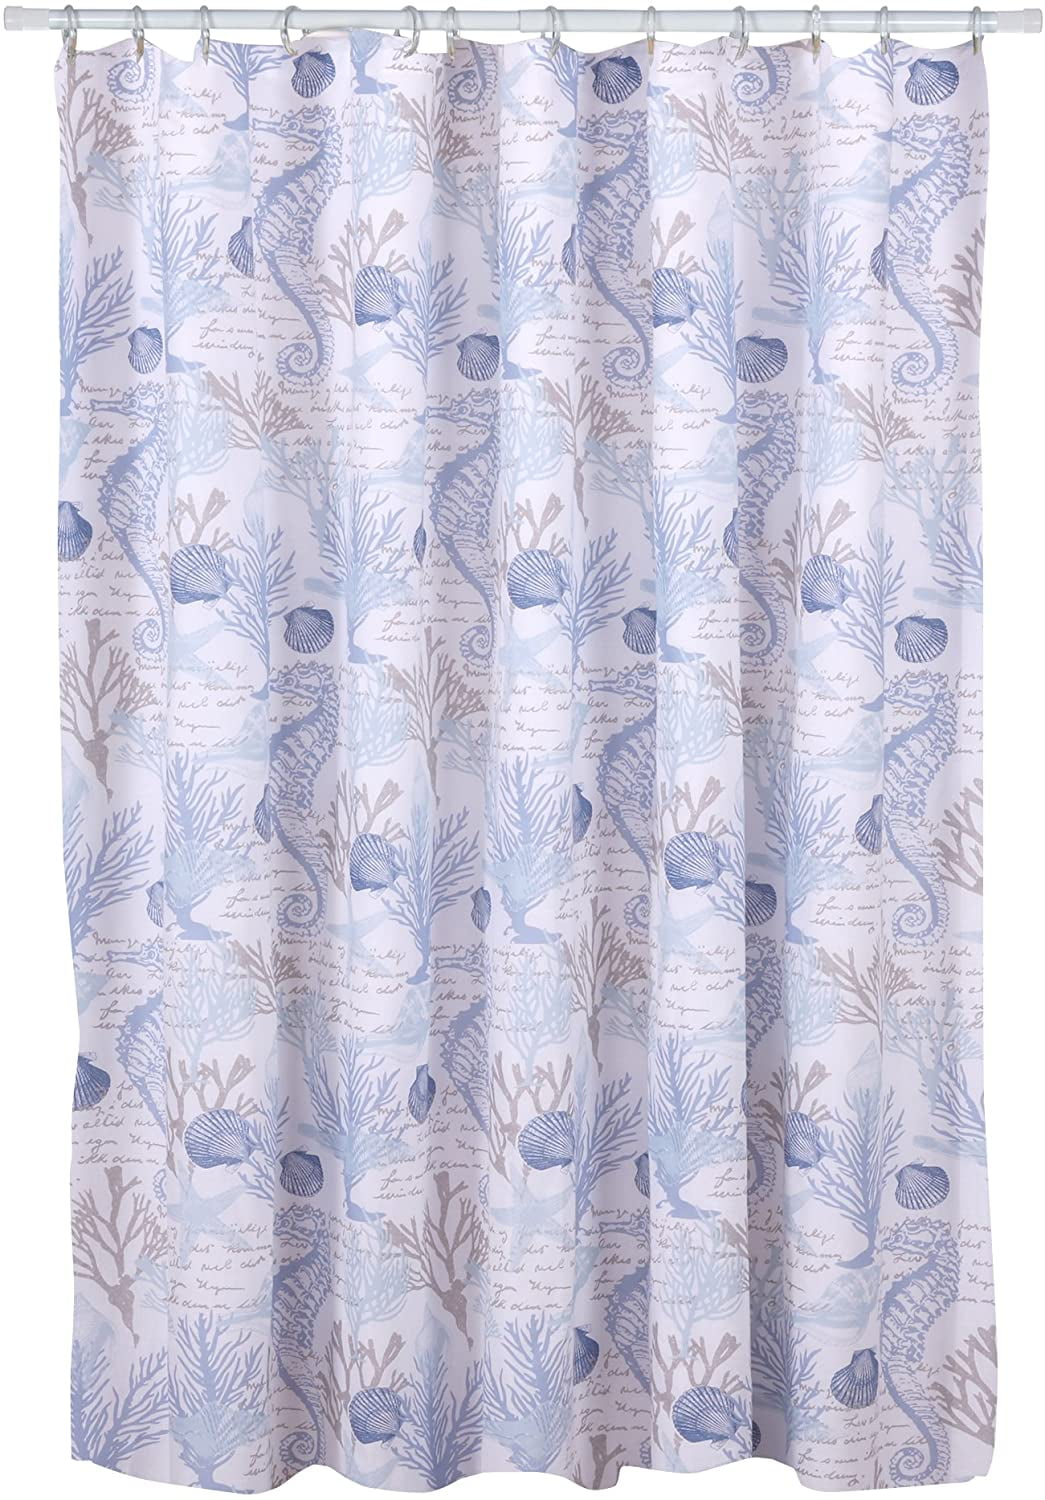 Gagos Shower Curtain 72x72in, Levtex Shower Curtain